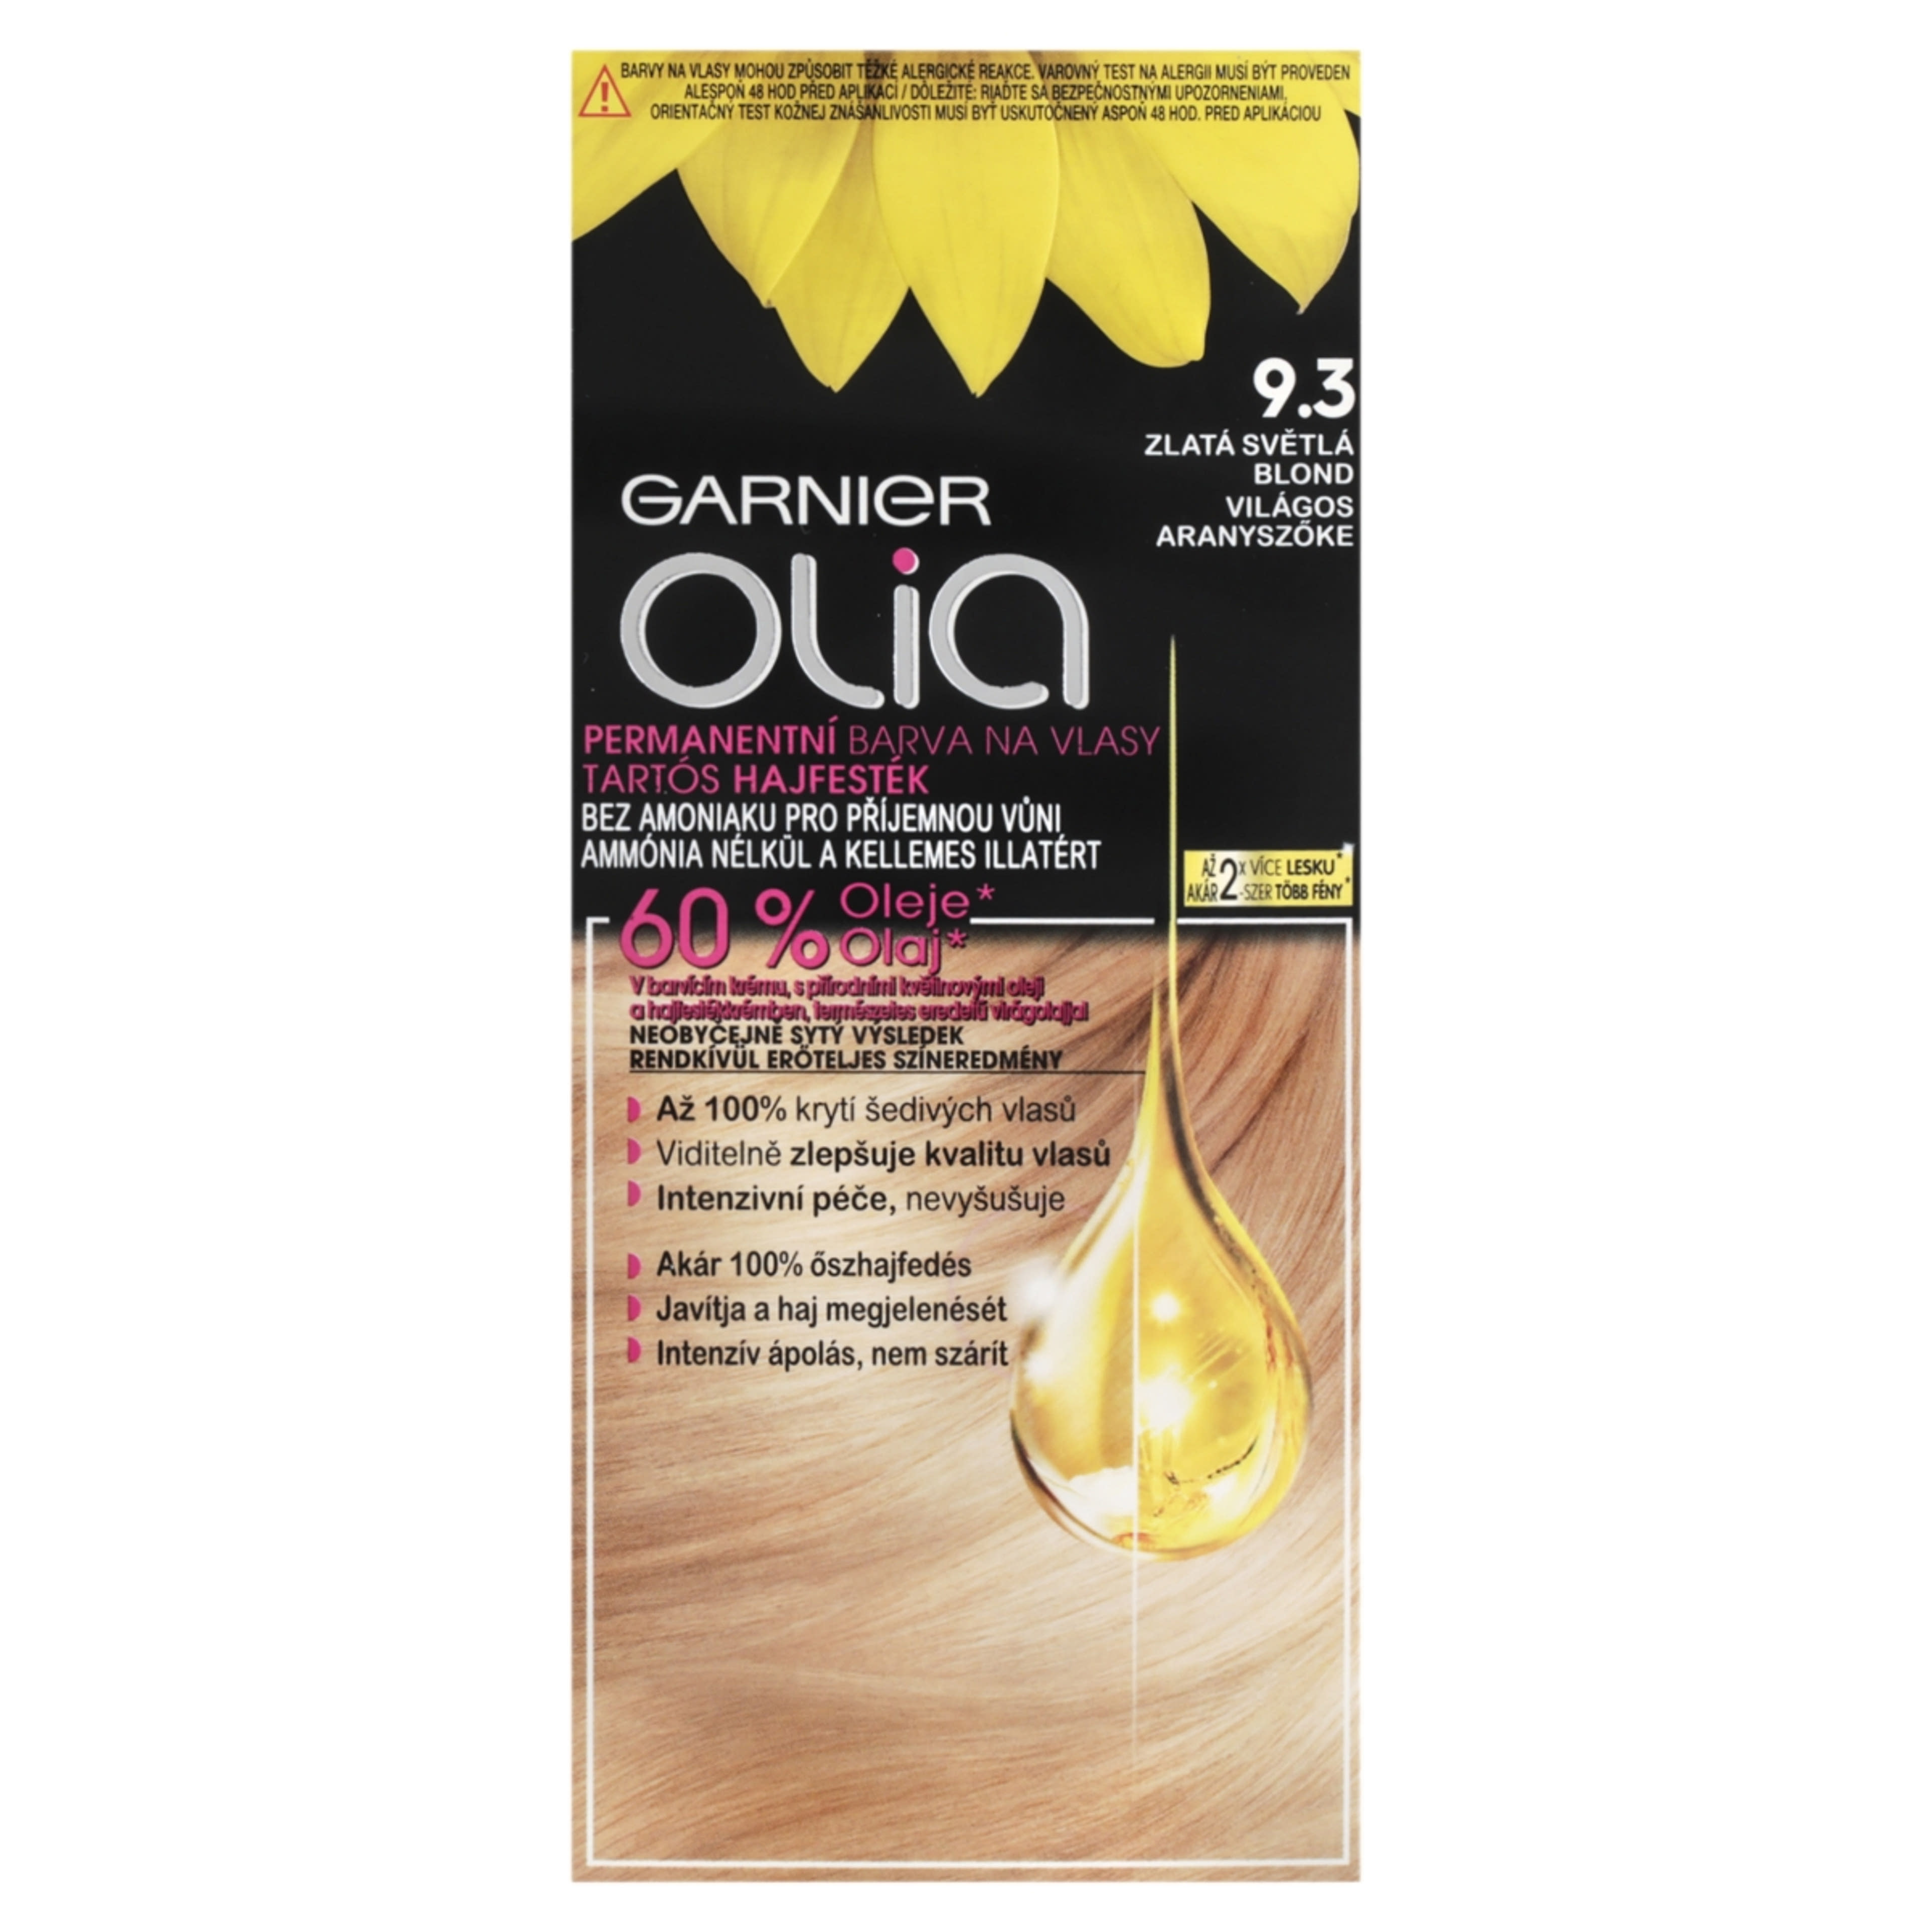 Garnier Olia tartós hajfesték 9.3 Világos aranyszőke - 1 db